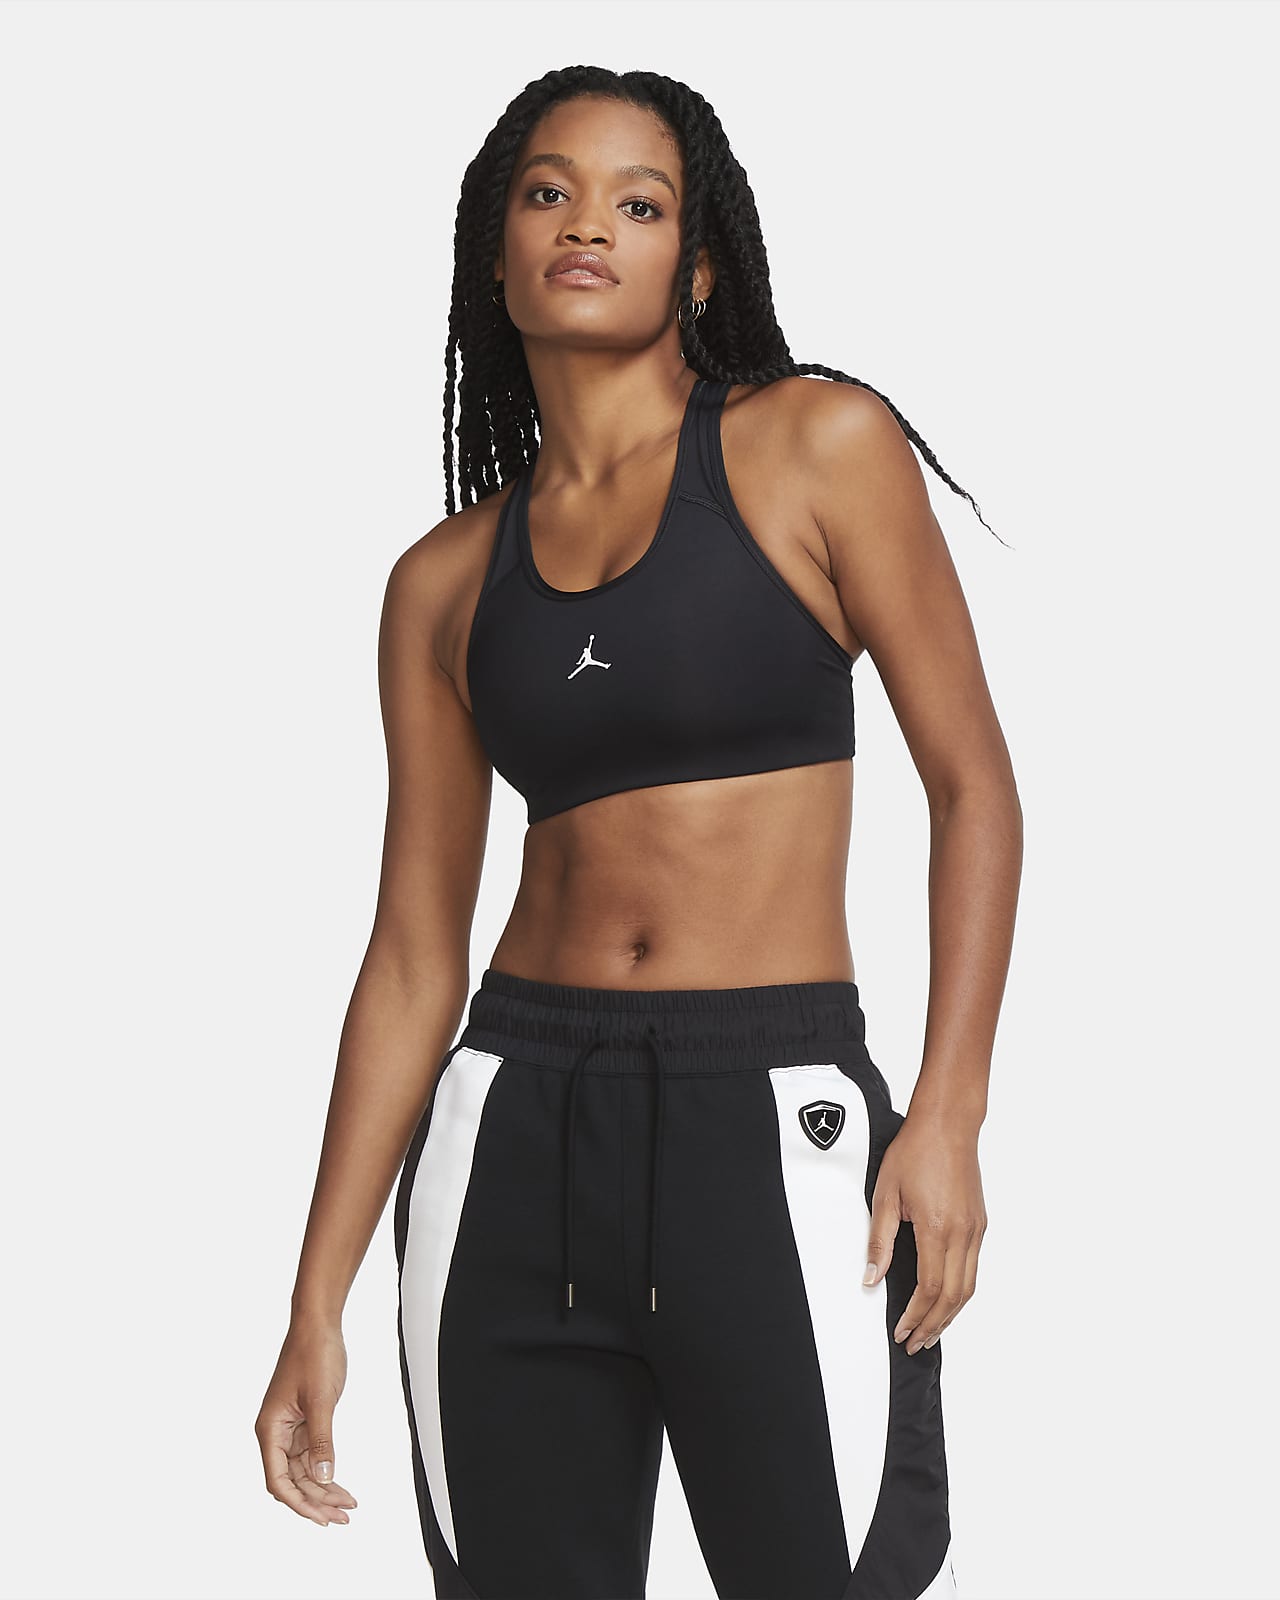 Nike - Women's Medium-Support 1-Piece Pad Sports Bra Nike Dri-FIT